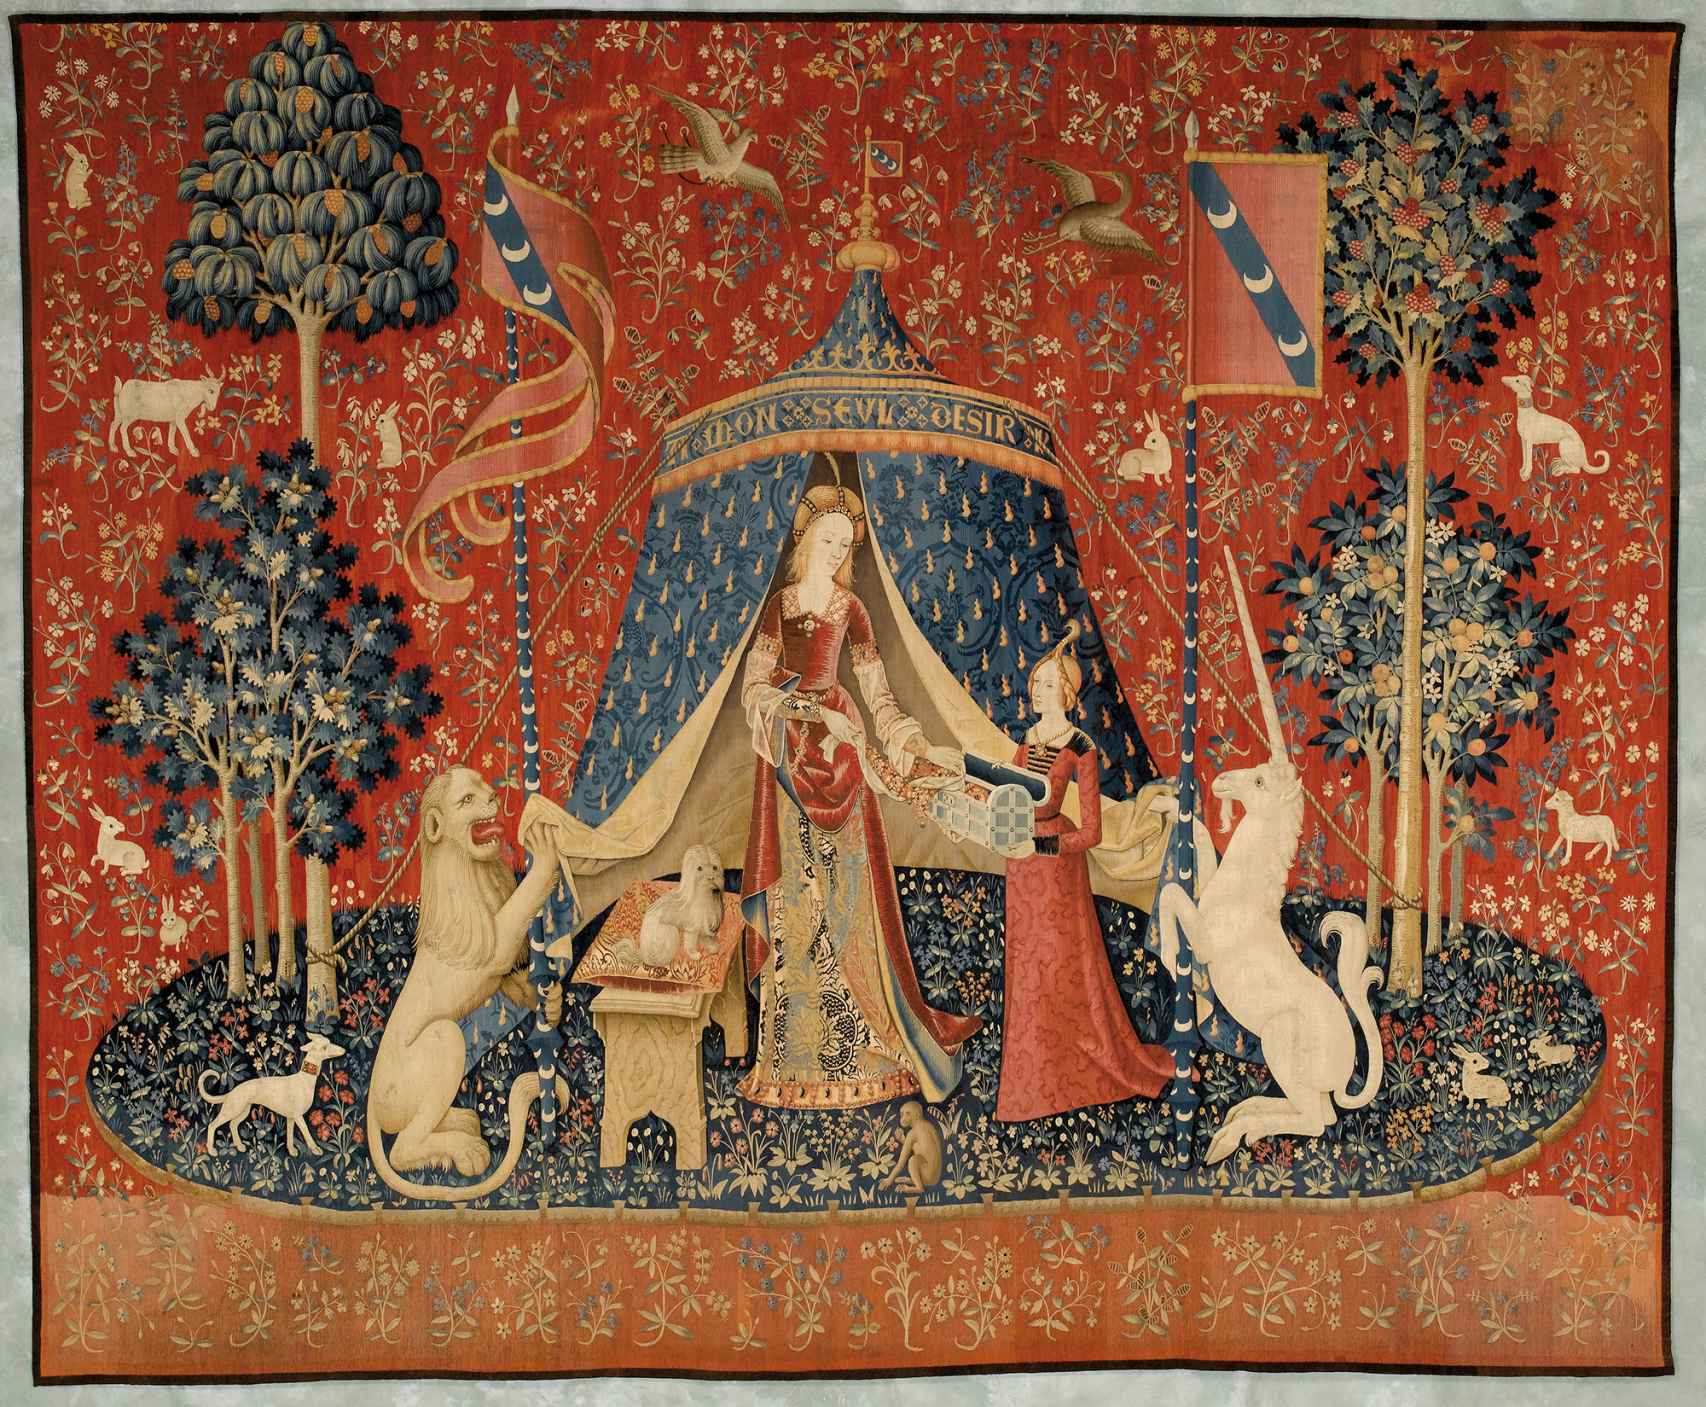 Uno de los tapices de 'La dama y el unicornio', h. 1500 (Foto: Museo de Cluny © RMN-Gand Palais / Michel Urtado)